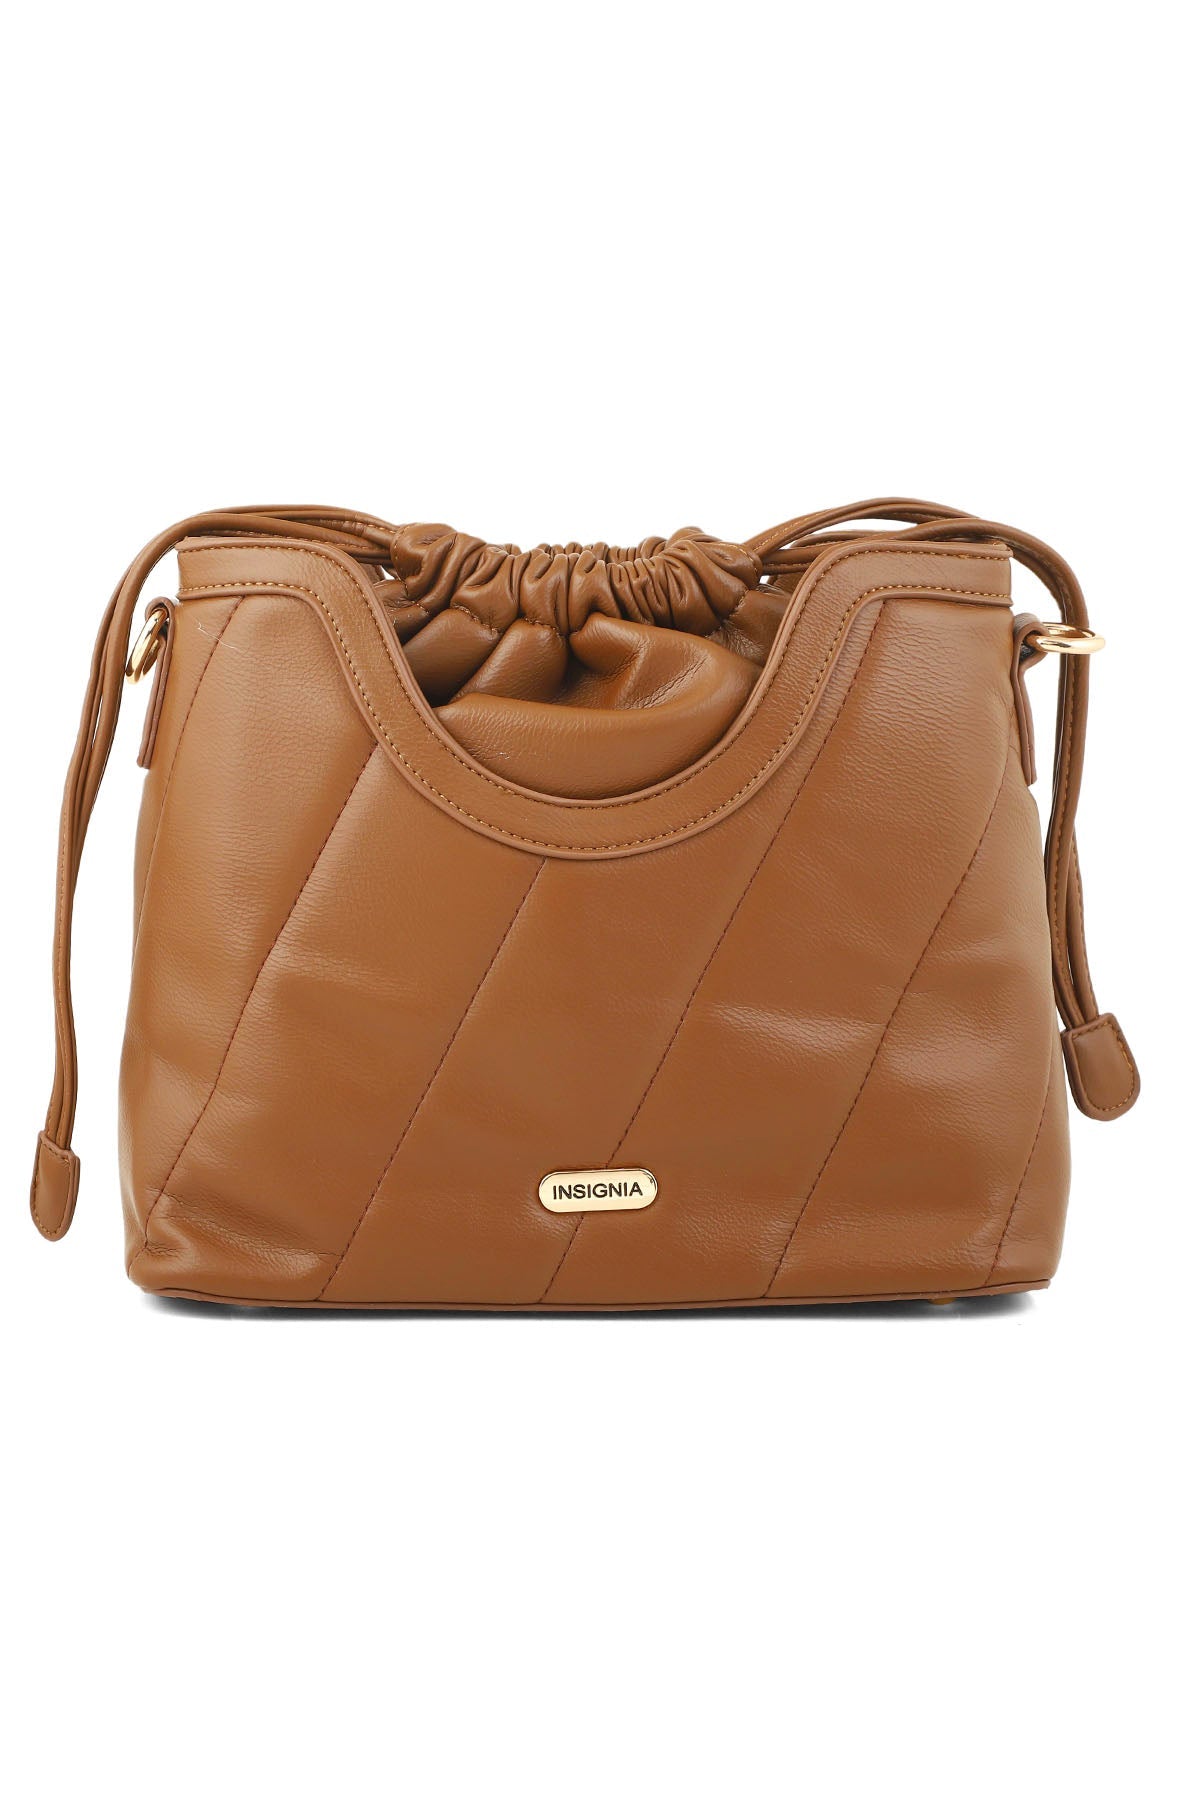 Hobo Hand Bags B15131-Brown